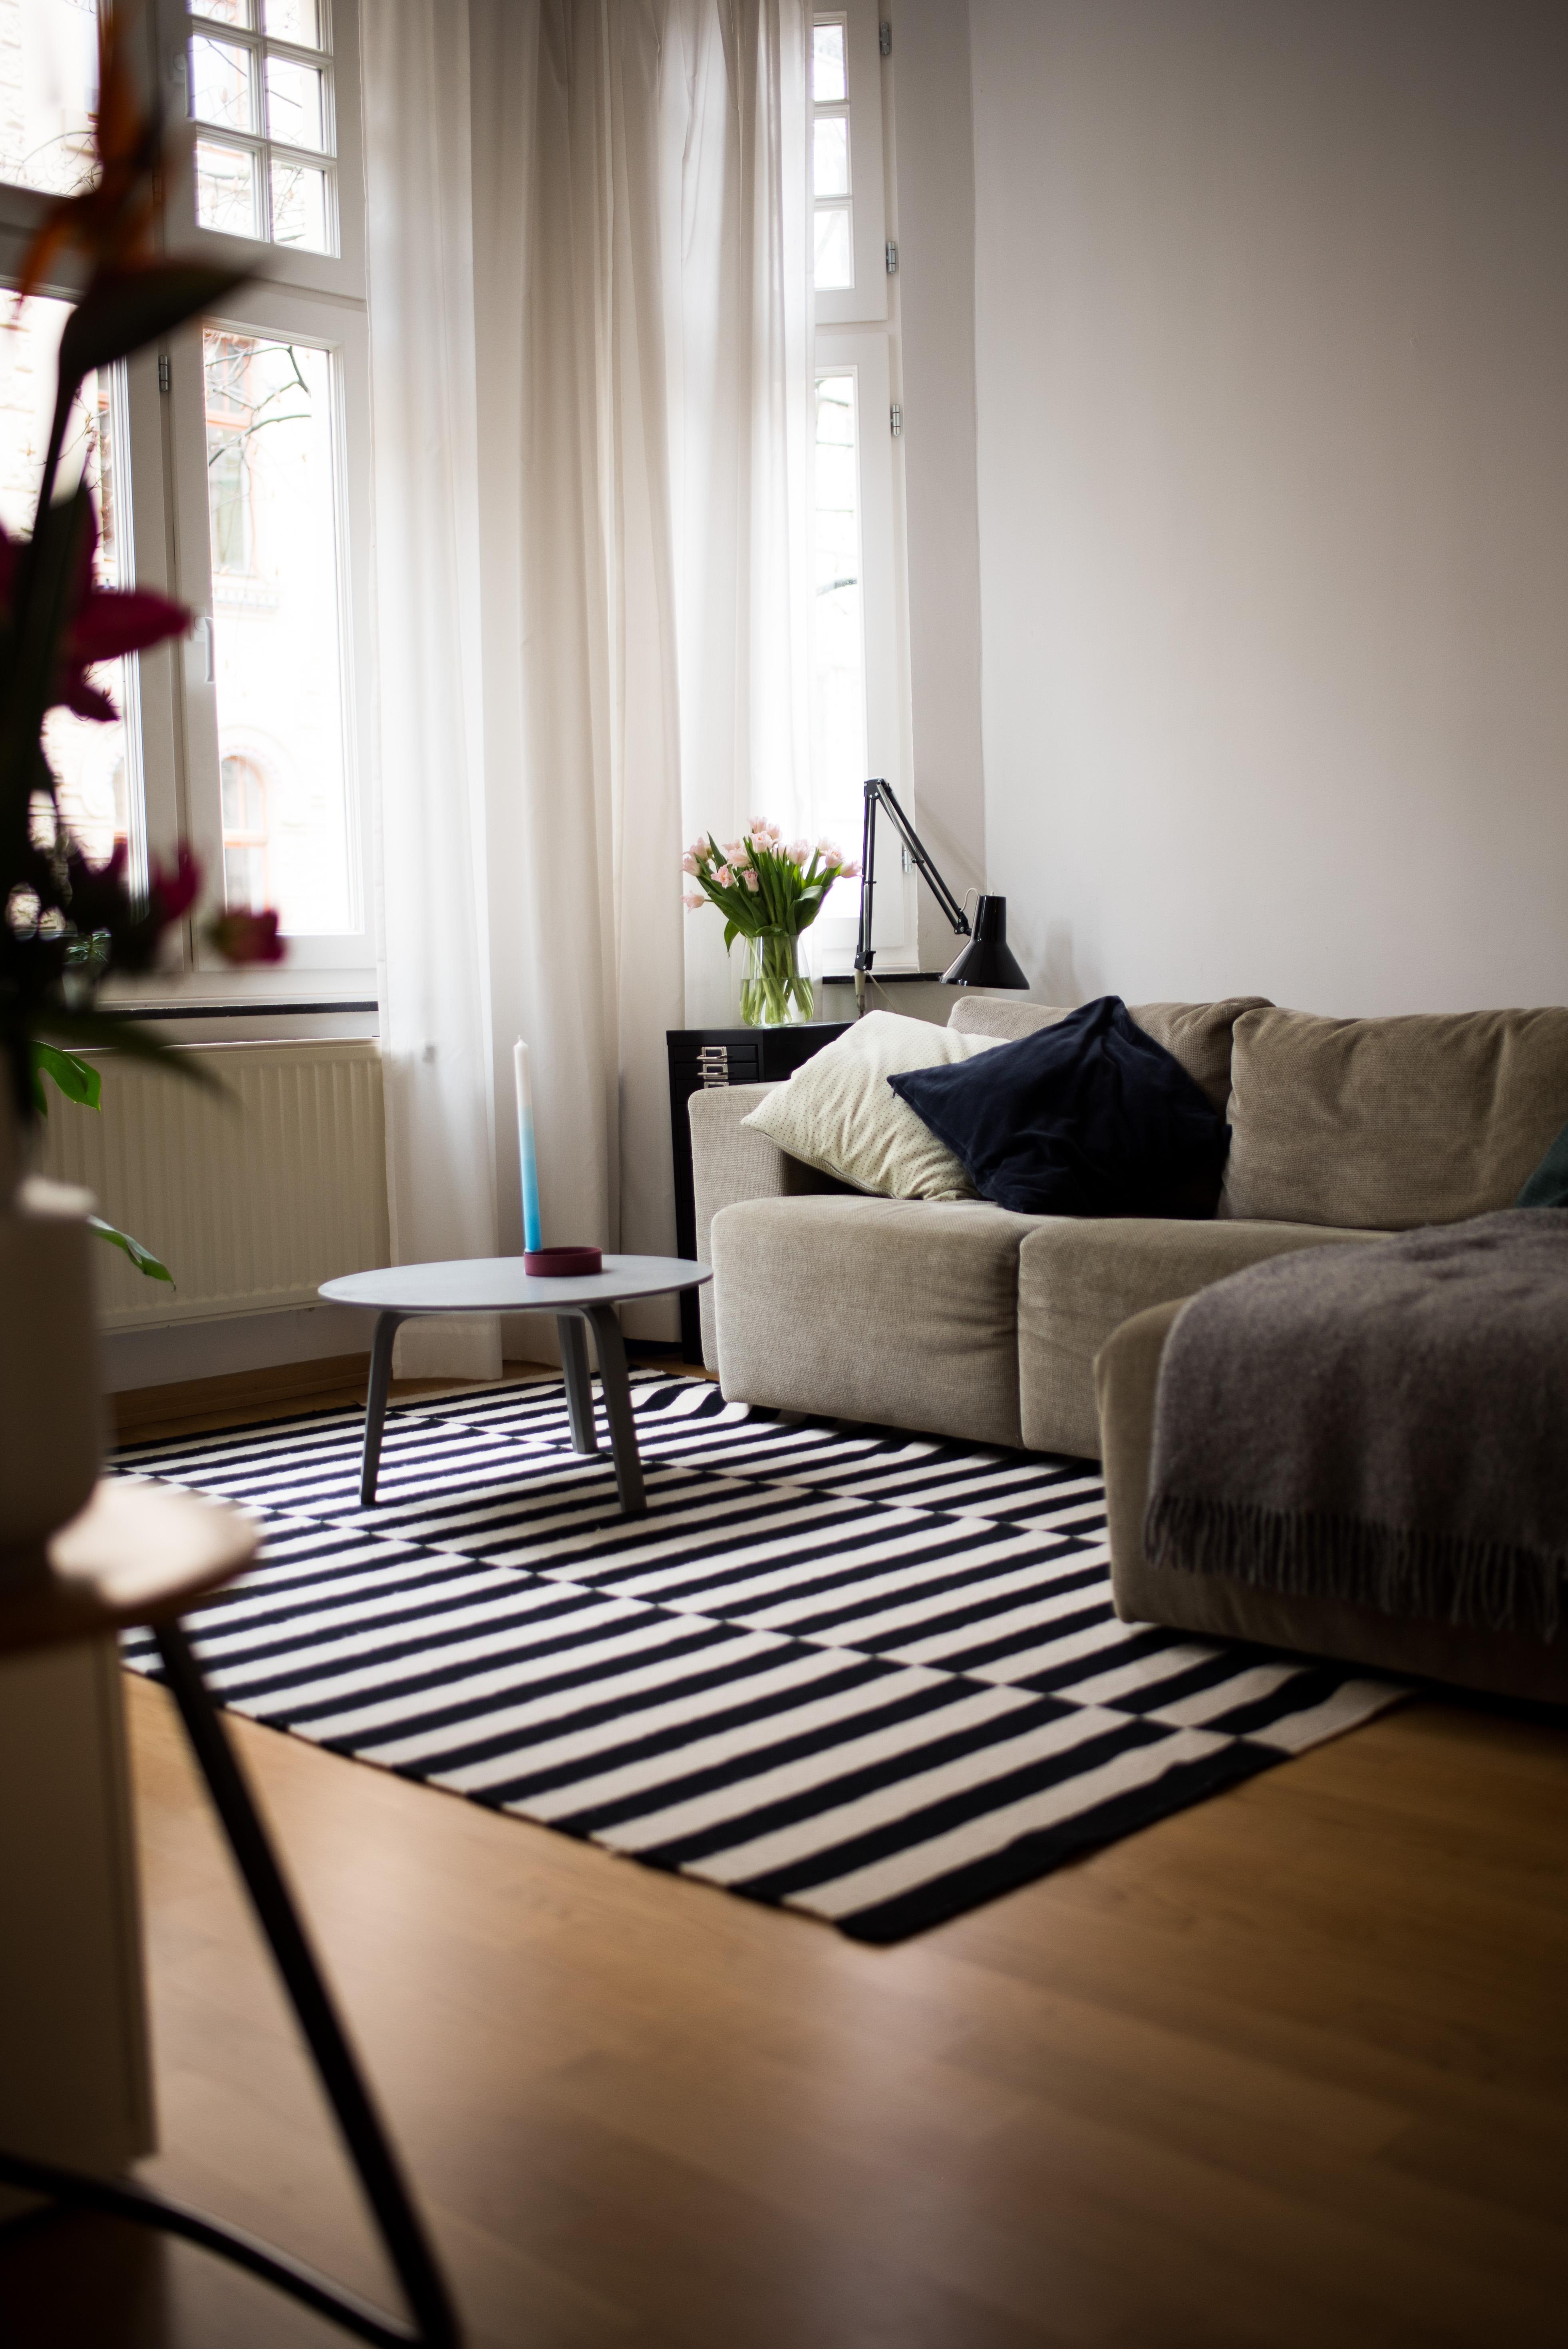 Habts gemütlich! #wohnzimmer #homesweethome #interior #livingroom #altbau